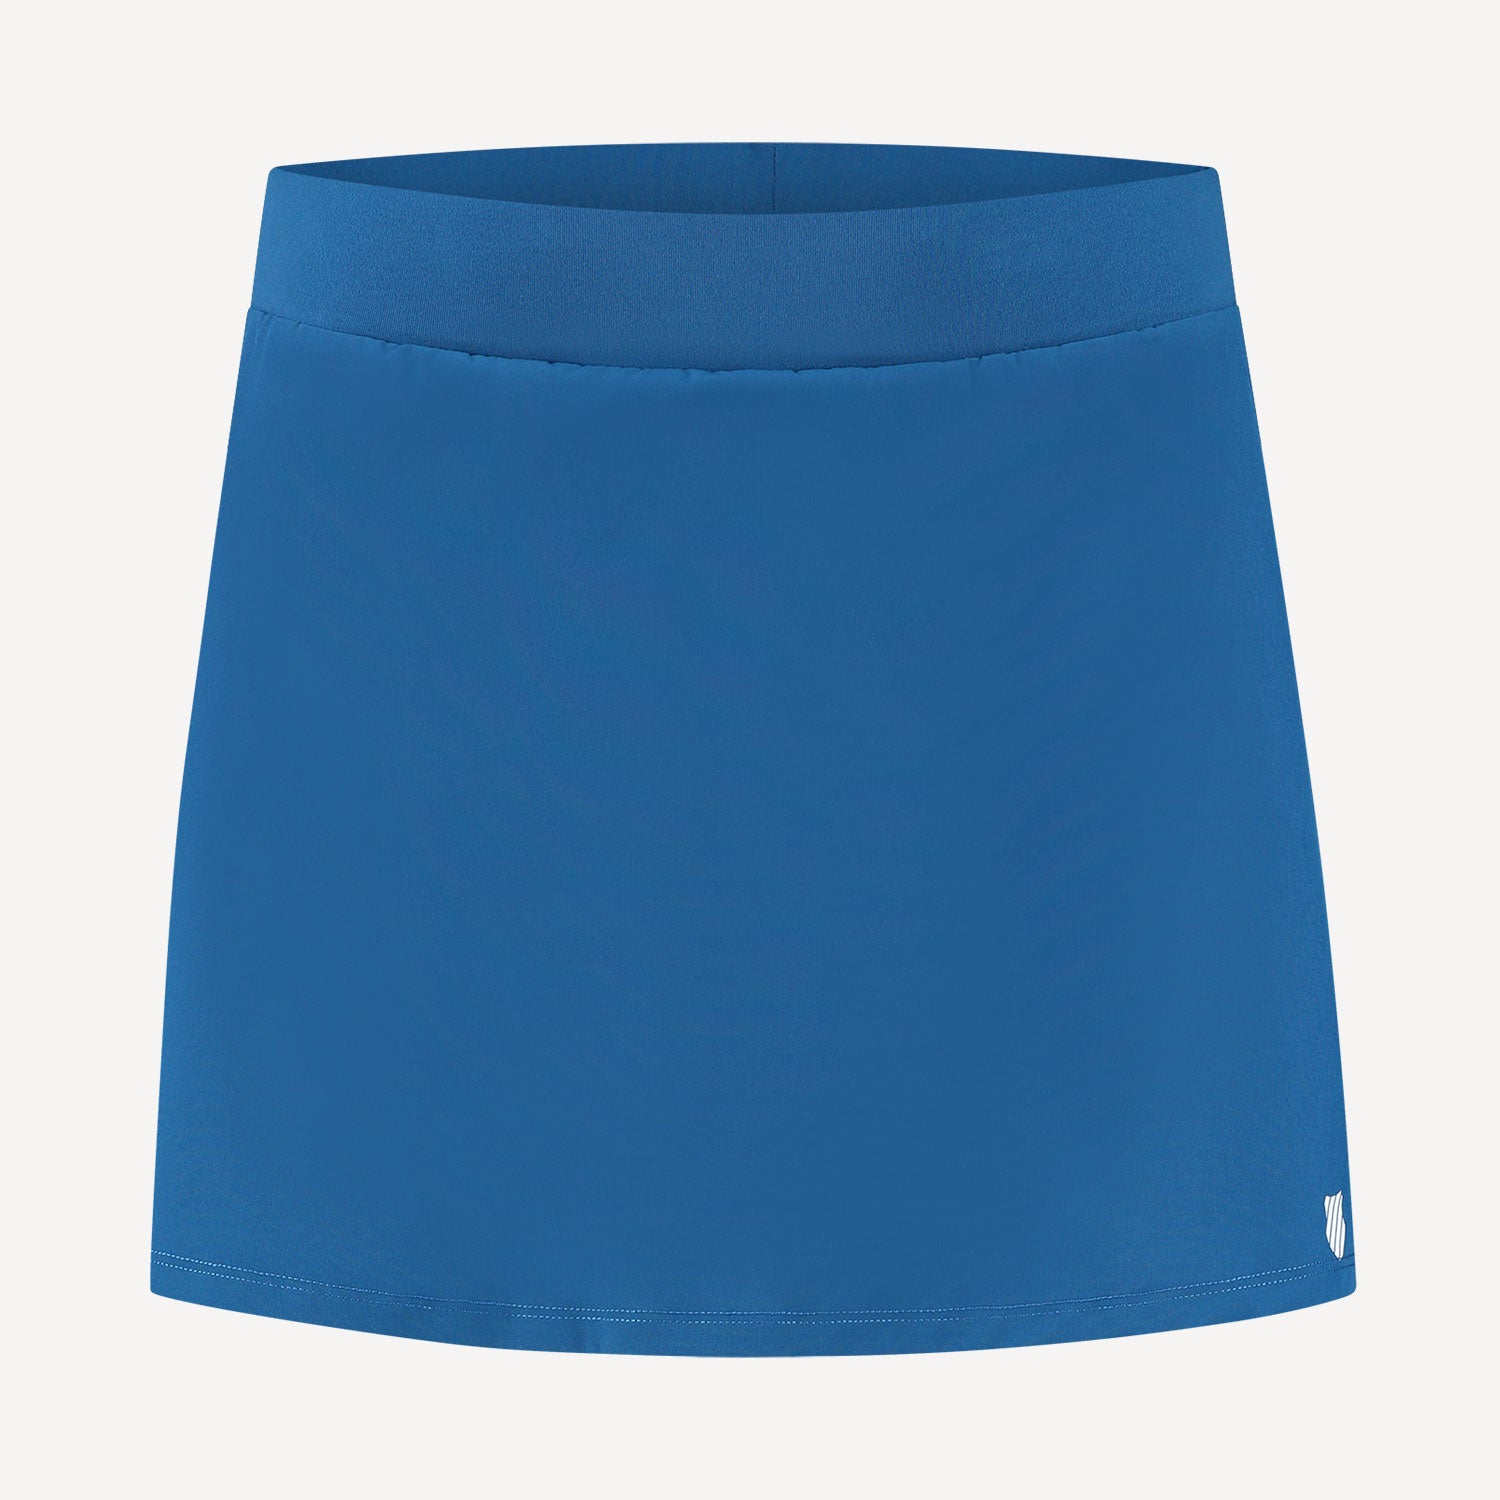 K-Swiss Hypercourt Women's Tennis Skirt Blue (1)